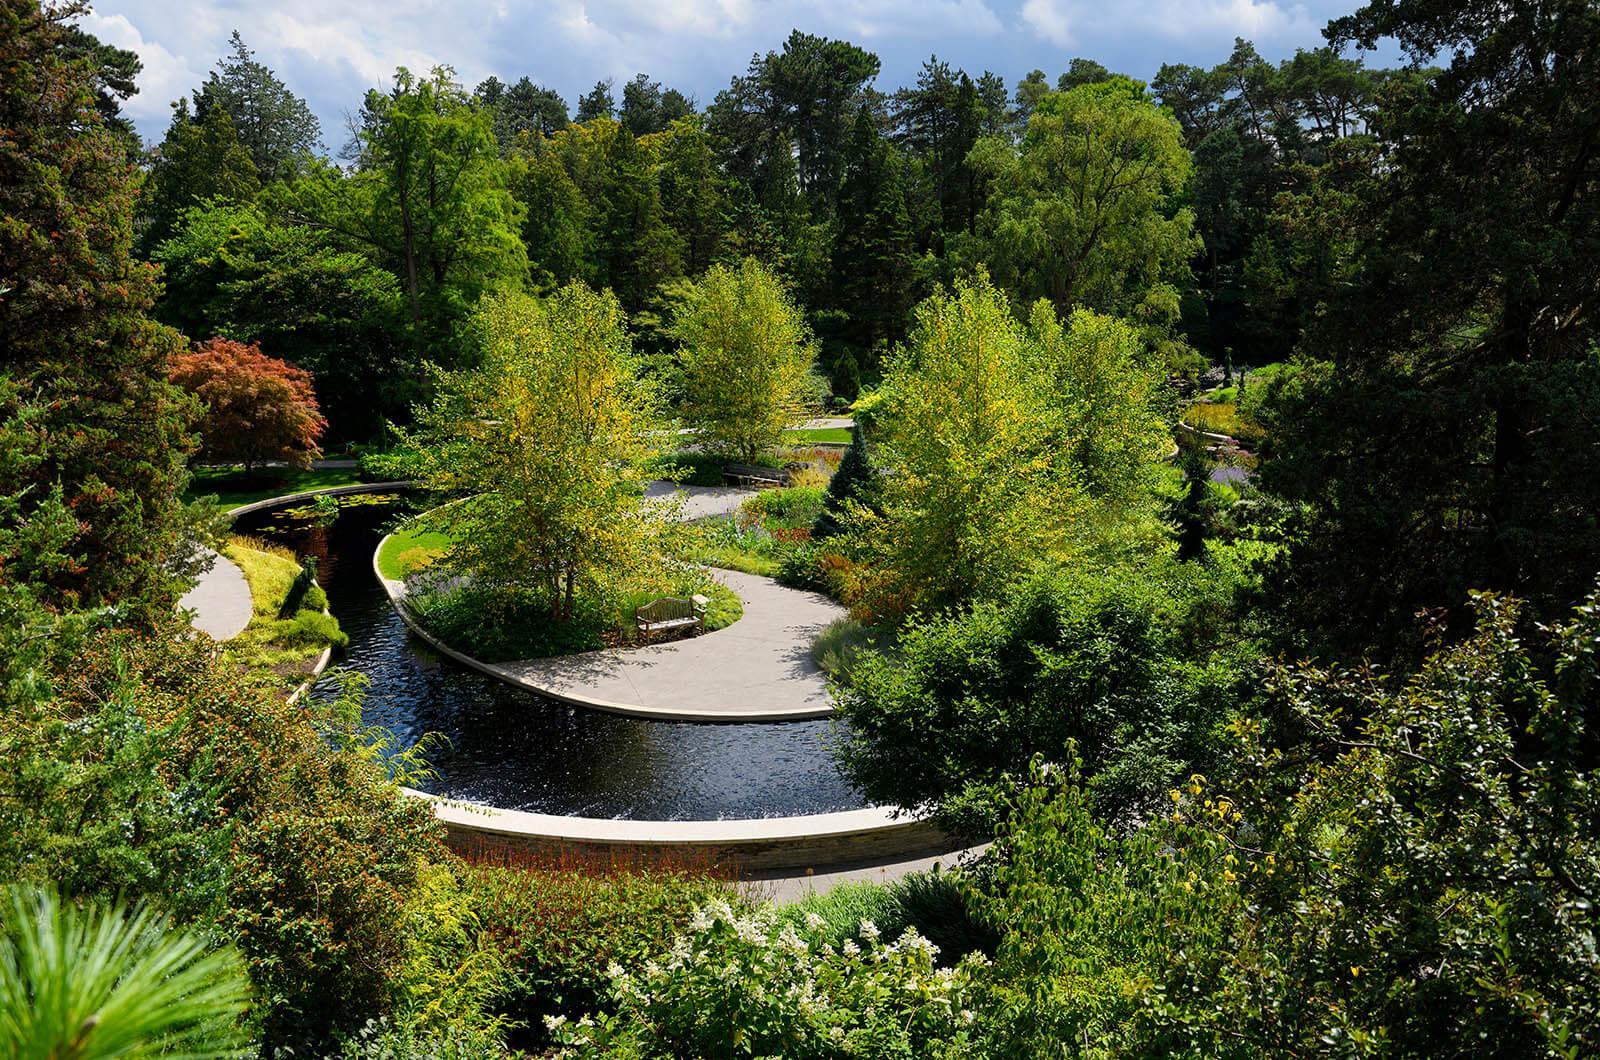 The Rock Garden at Royal Botanial Gardens in Burlington, Ont.